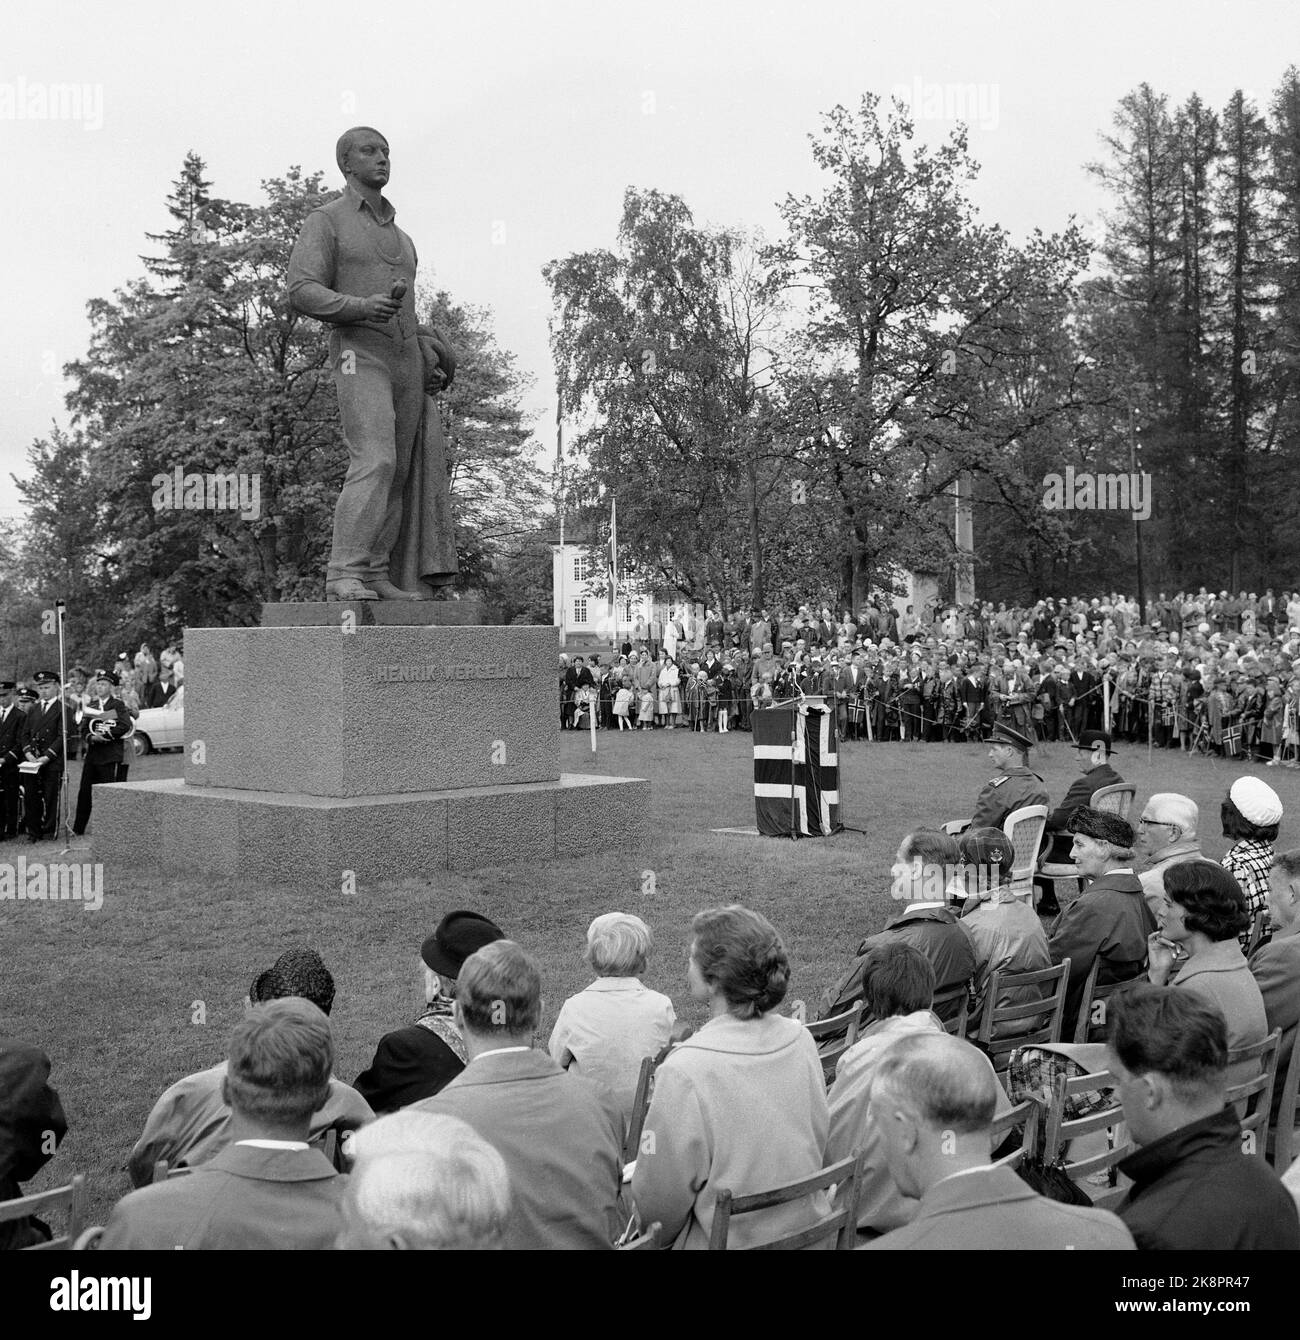 Eidsvoll 19620213 la presentazione del monumento del popolo norvegese al poeta Henrik Wergeland fuori dell'edificio Eidsvoll. Ecco l'immagine panoramica subito dopo la presentazione. Il re siede di fronte al Th. Con cappello. Foto: NTB / NTB Foto Stock